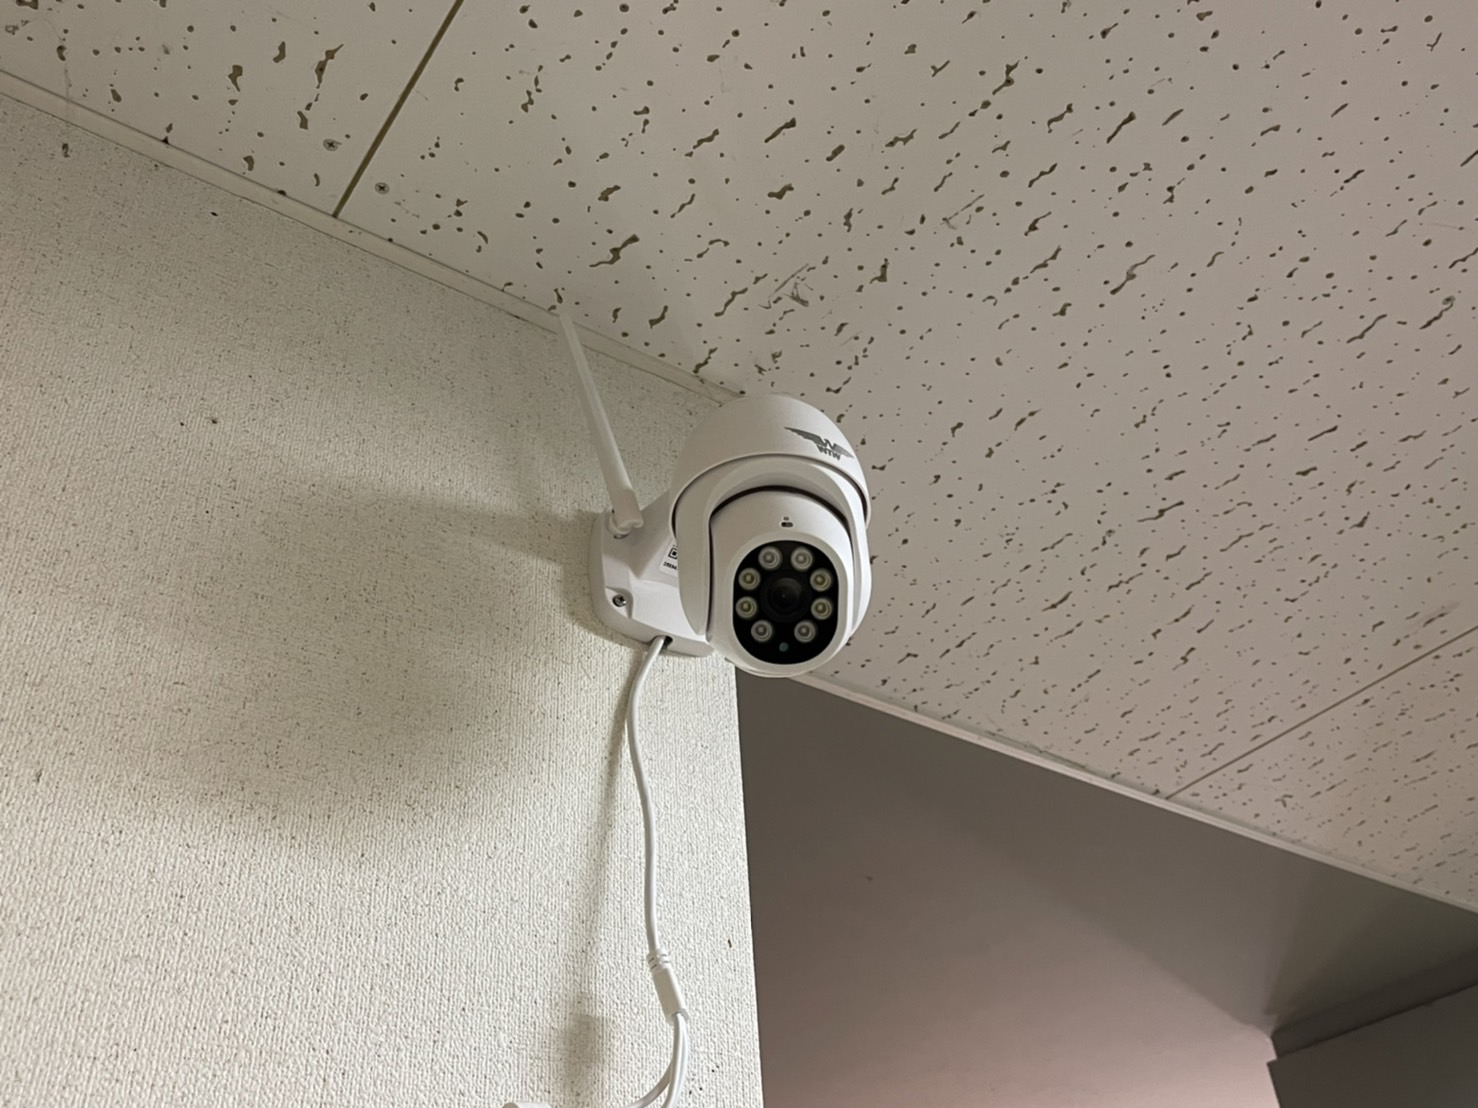 不審者の侵入を未然防止！翔凜の寮に防犯カメラを設置しました。